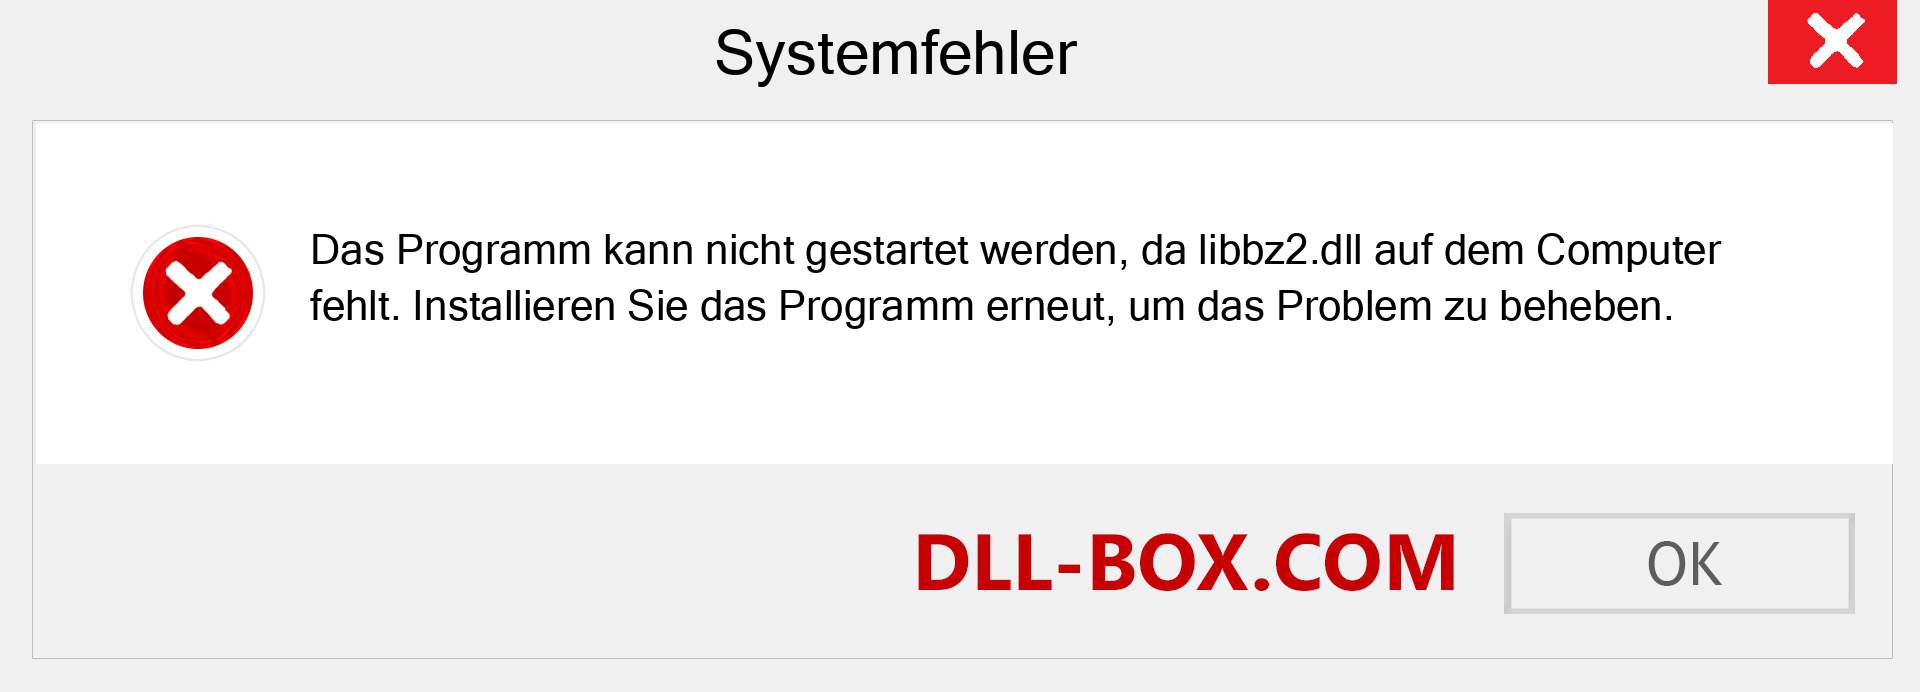 libbz2.dll-Datei fehlt?. Download für Windows 7, 8, 10 - Fix libbz2 dll Missing Error unter Windows, Fotos, Bildern